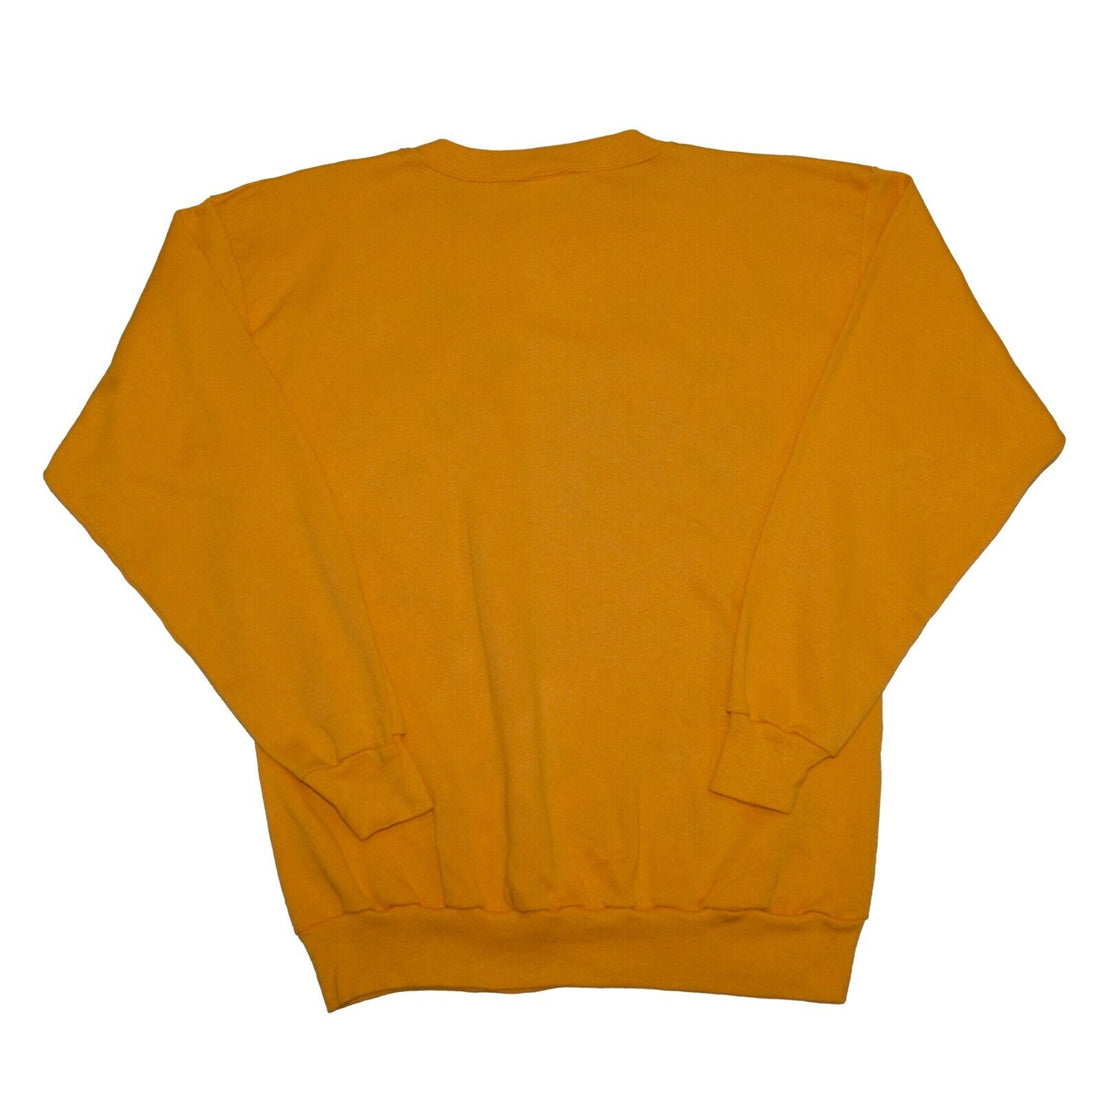 Vintage Iowa Hawkeyes Football Sweatshirt Crewneck Size XL Yellow 90s NCAA